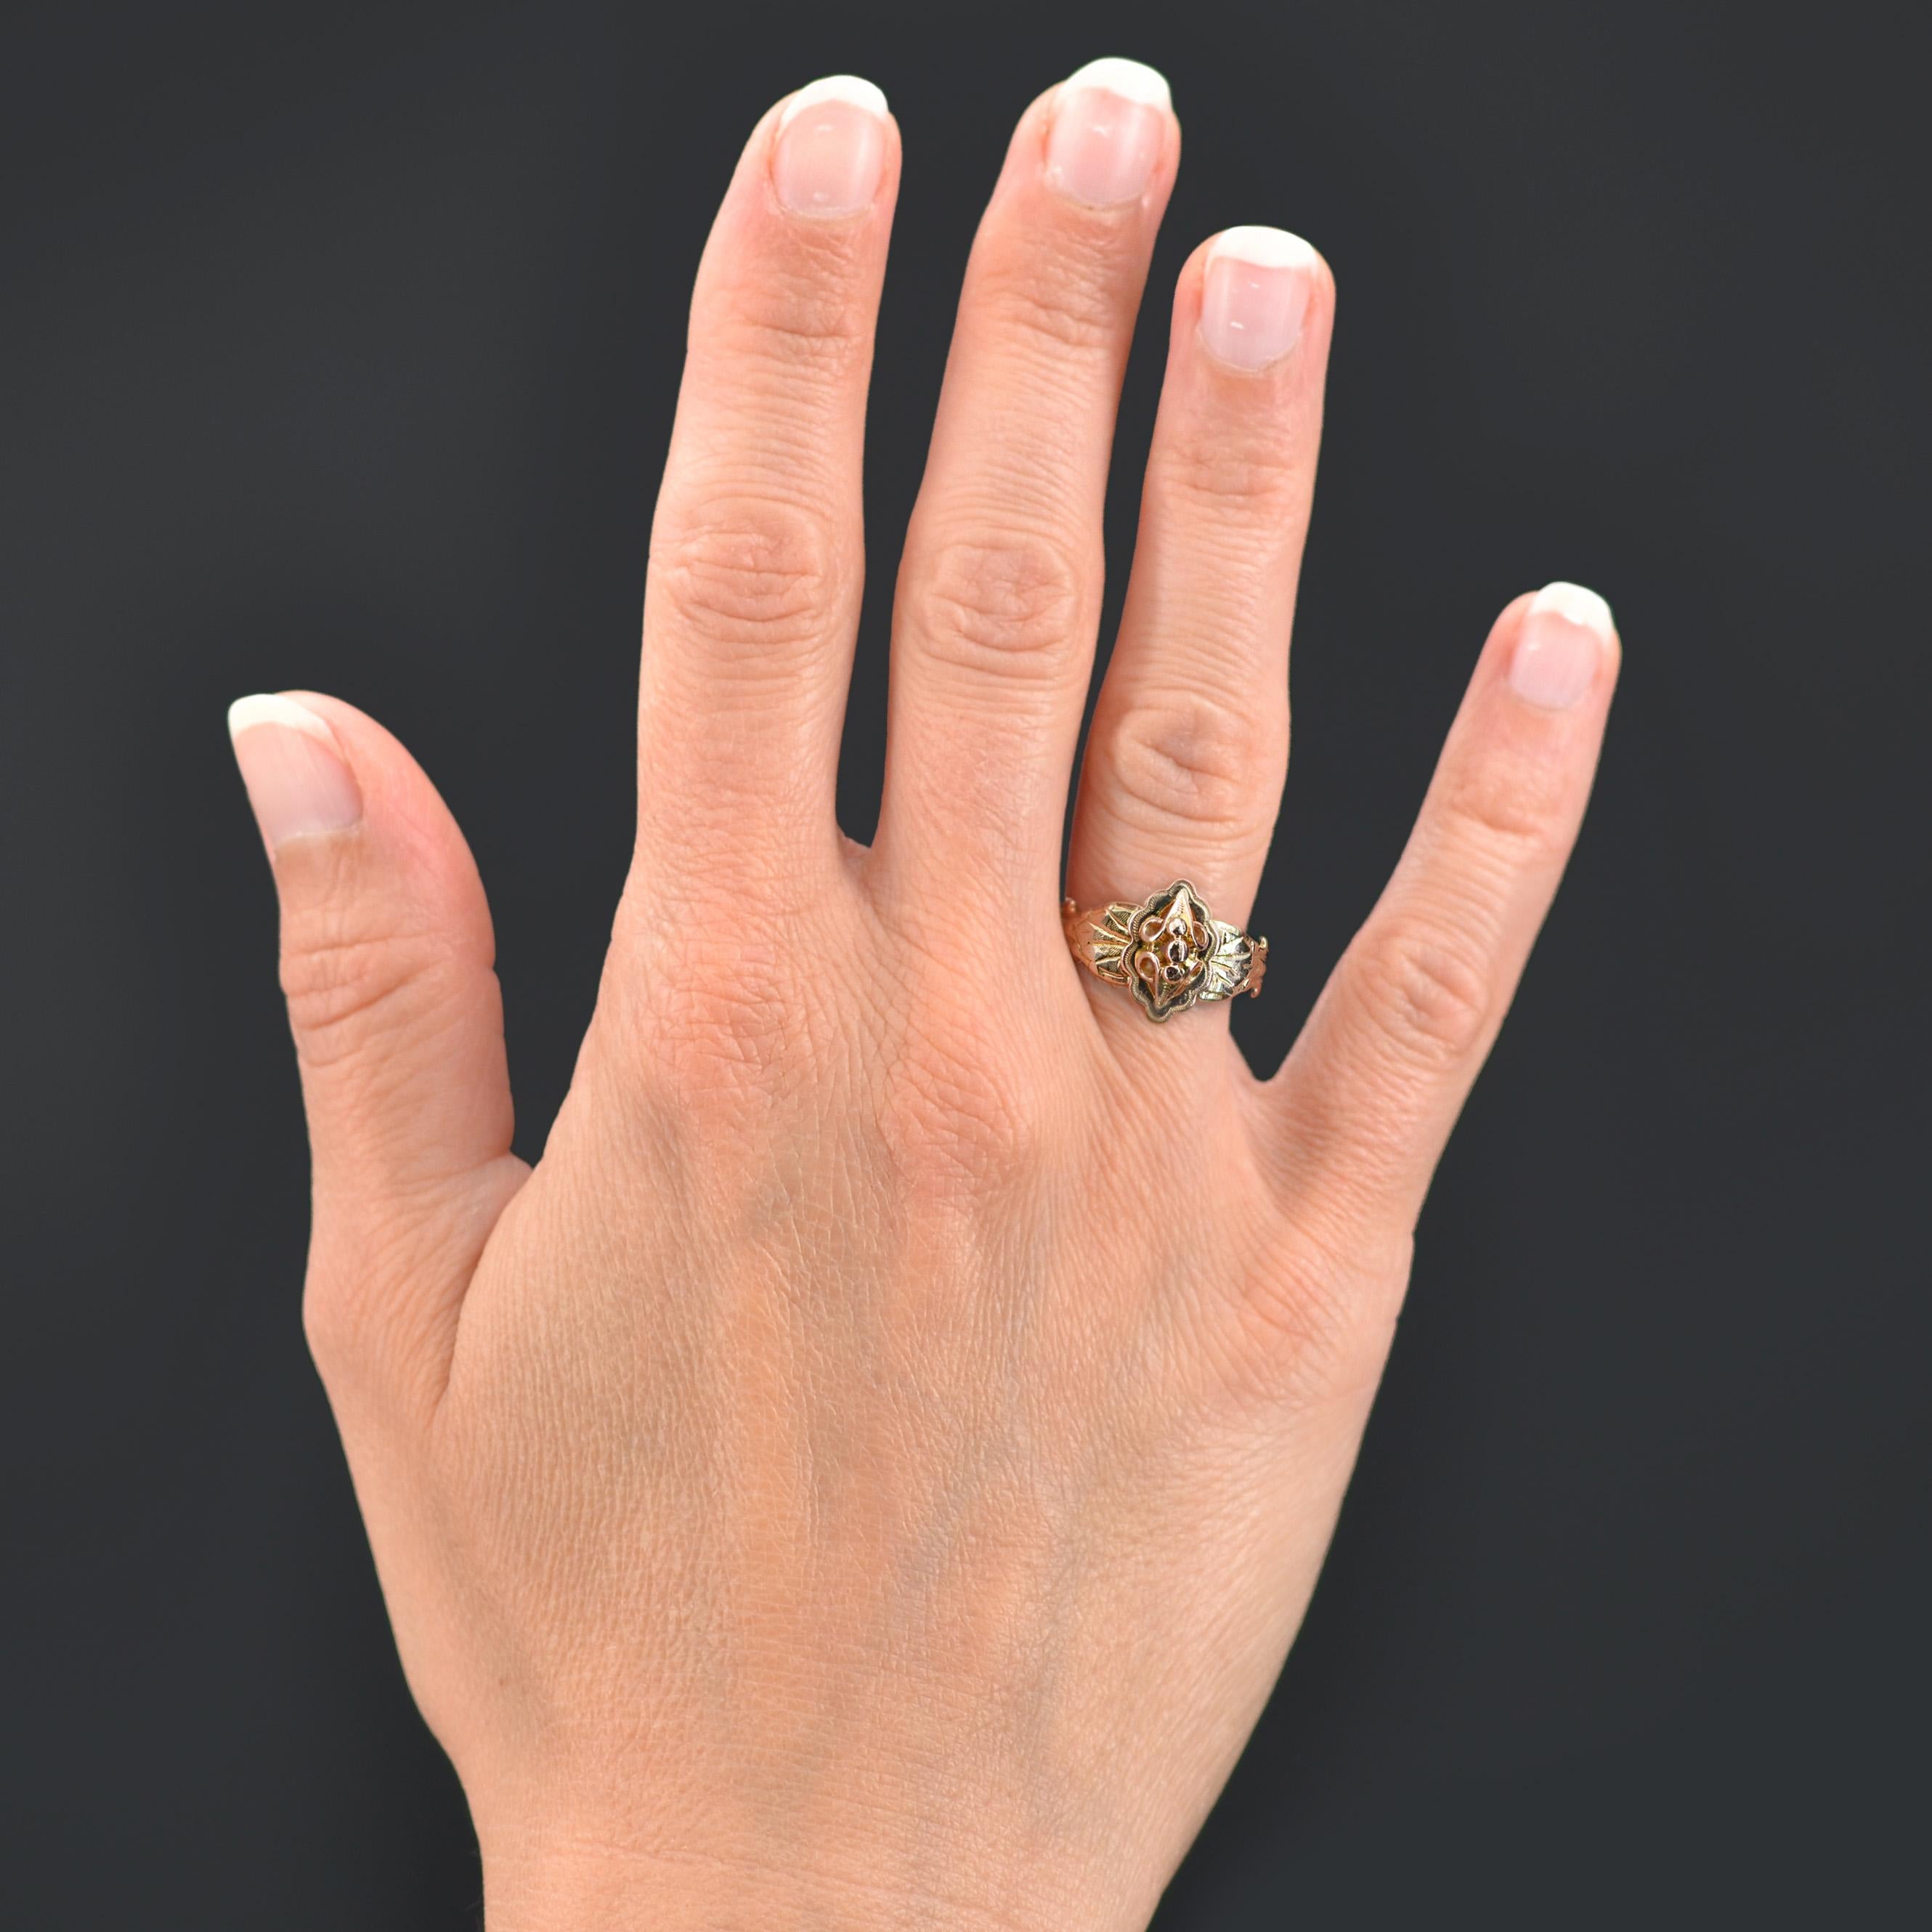 Ring aus 18 Karat Roségold.
Dieser antike Ring präsentiert eine ziselierte Platte mit Goldperlen in der Mitte und eine durchbrochene, ziselierte Dekoration. Der Anfang des Rings ist auf beiden Seiten des Kopfes eines Pflanzenmotivs